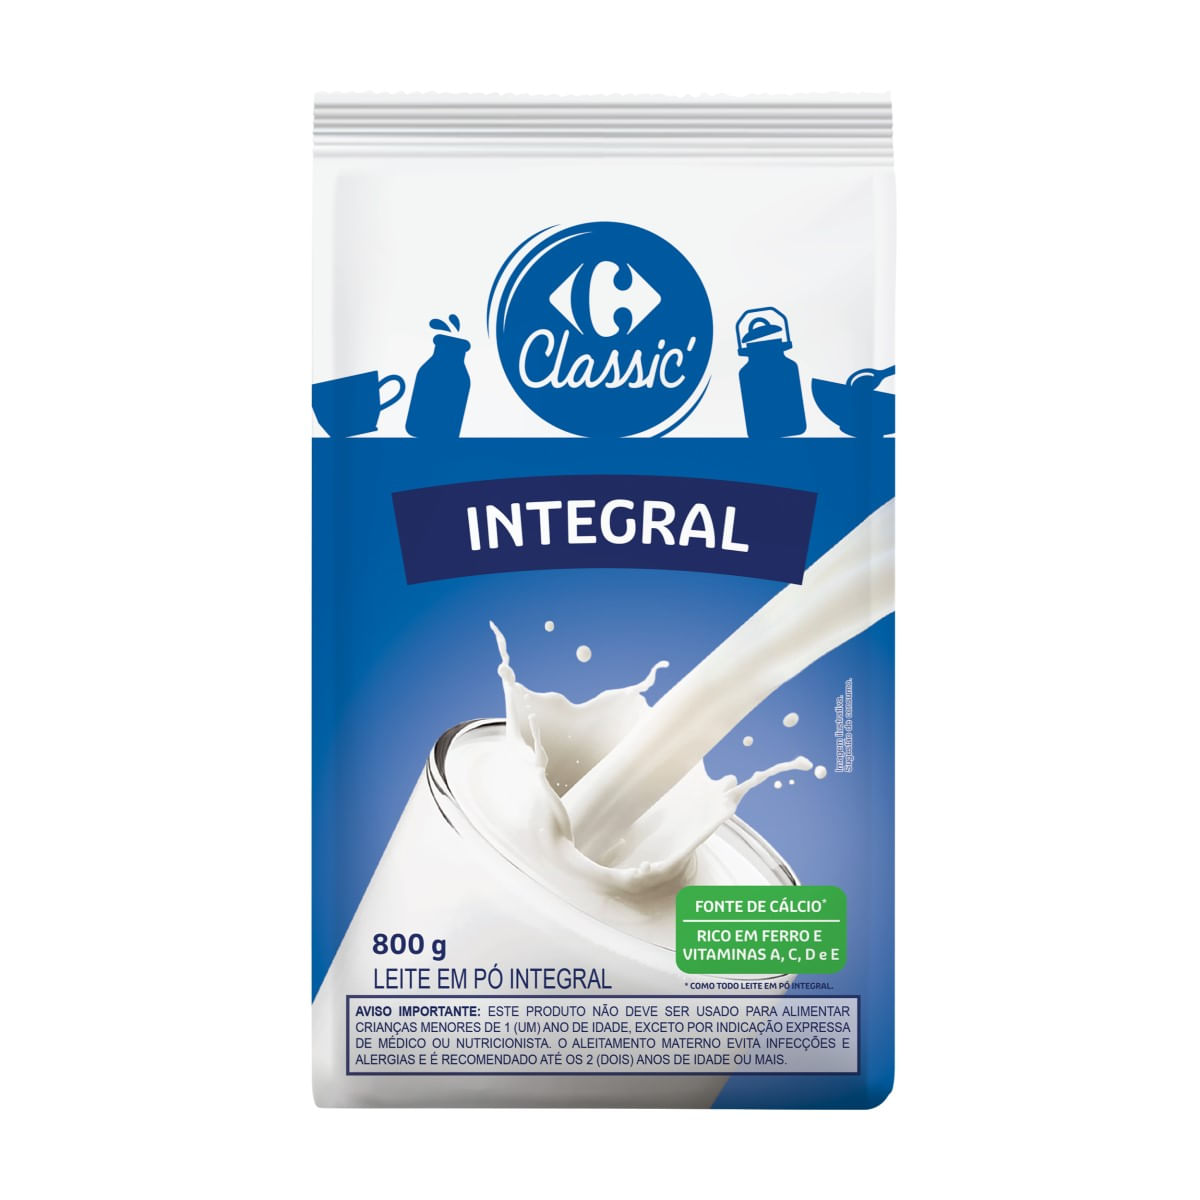 leite-em-po-integral-carrefour-classic-800-g-1.jpg